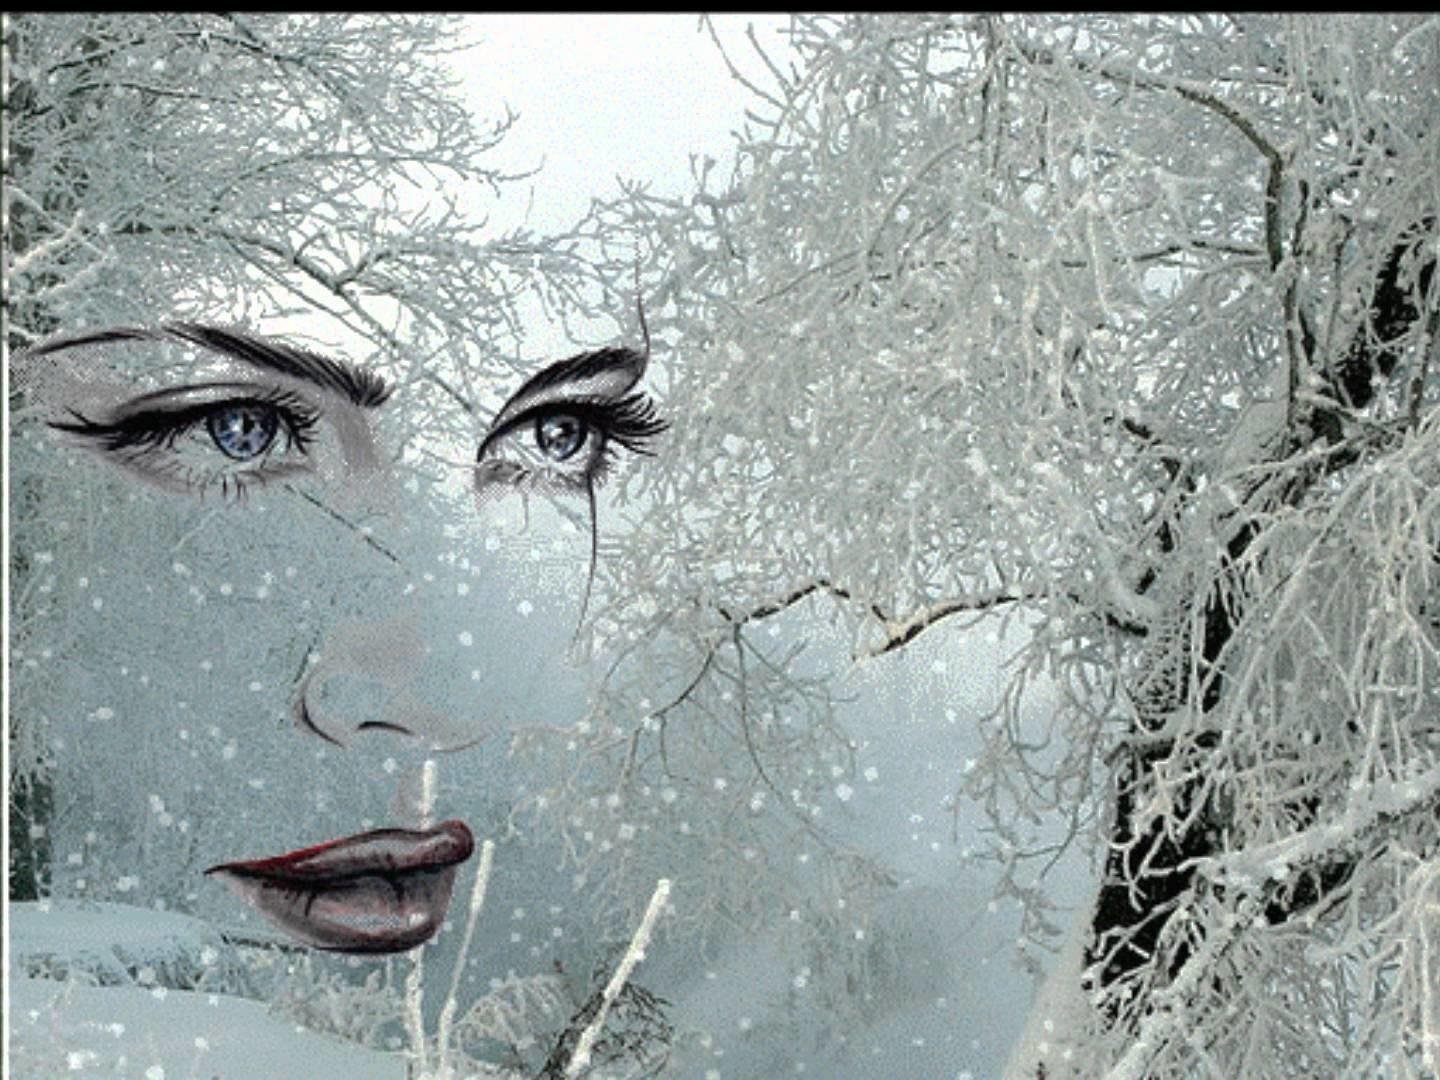 И наступит холодная ночь. Женщина в метель. Весенняя метель. Снег на ресницах. Женщина вьюга.